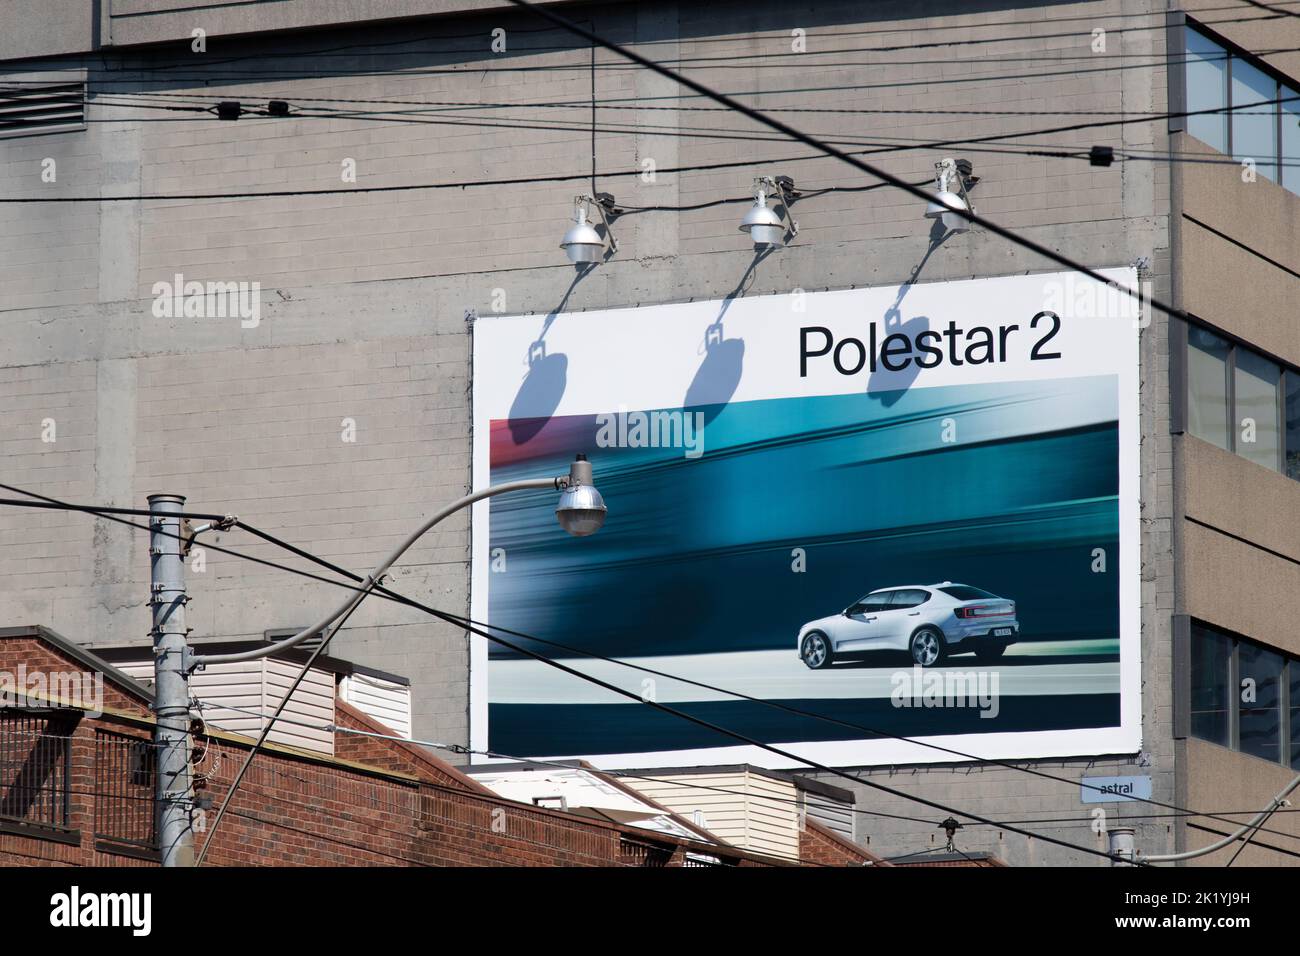 Un panneau publicitaire Polestar 2 est visible dans un bâtiment du centre-ville de Toronto; Polestar est un constructeur de véhicules électriques en pleine croissance appartenant à Volvo. Banque D'Images